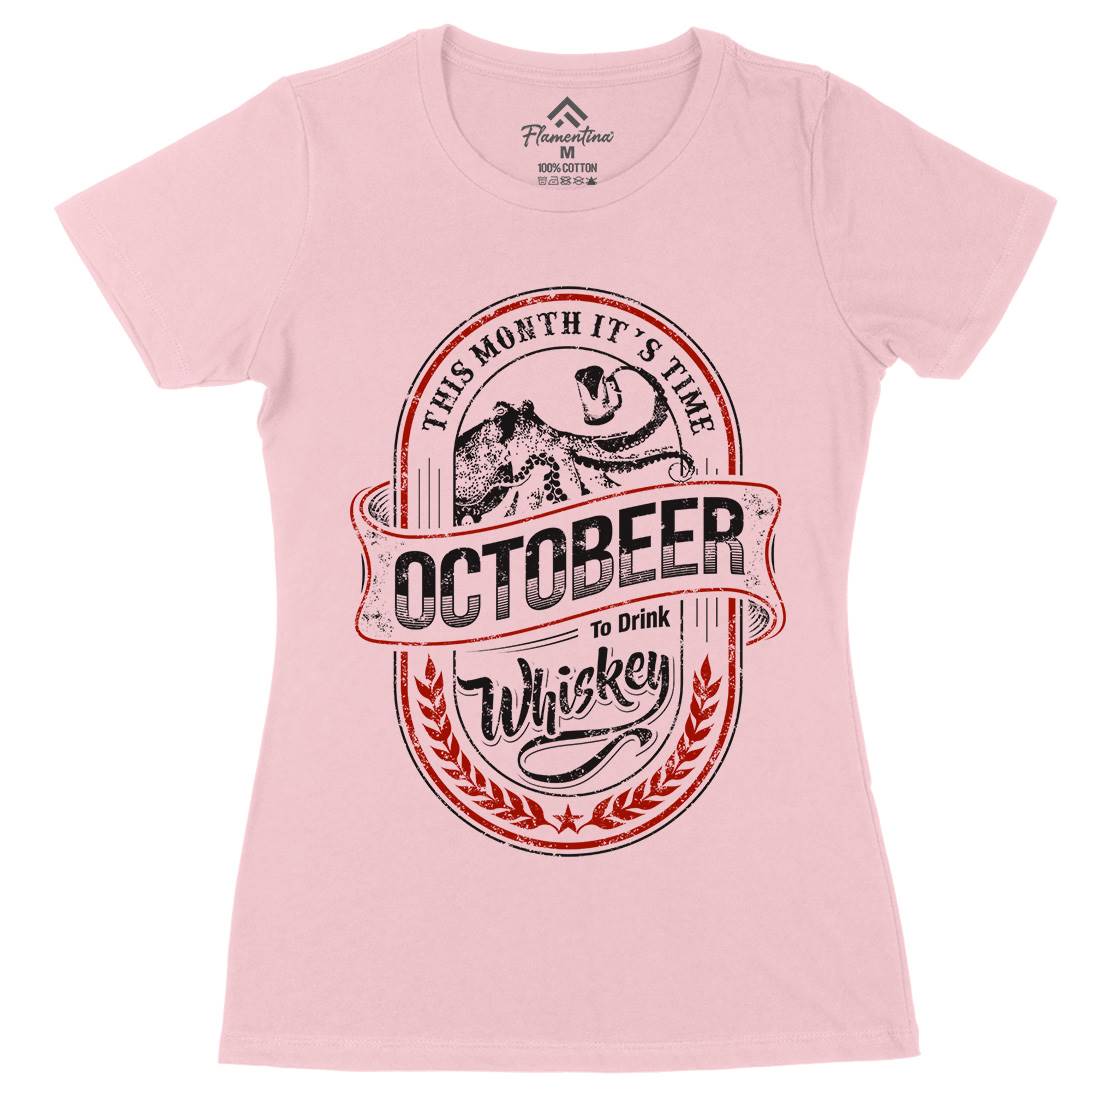 Octobeer Womens Organic Crew Neck T-Shirt Drinks D061